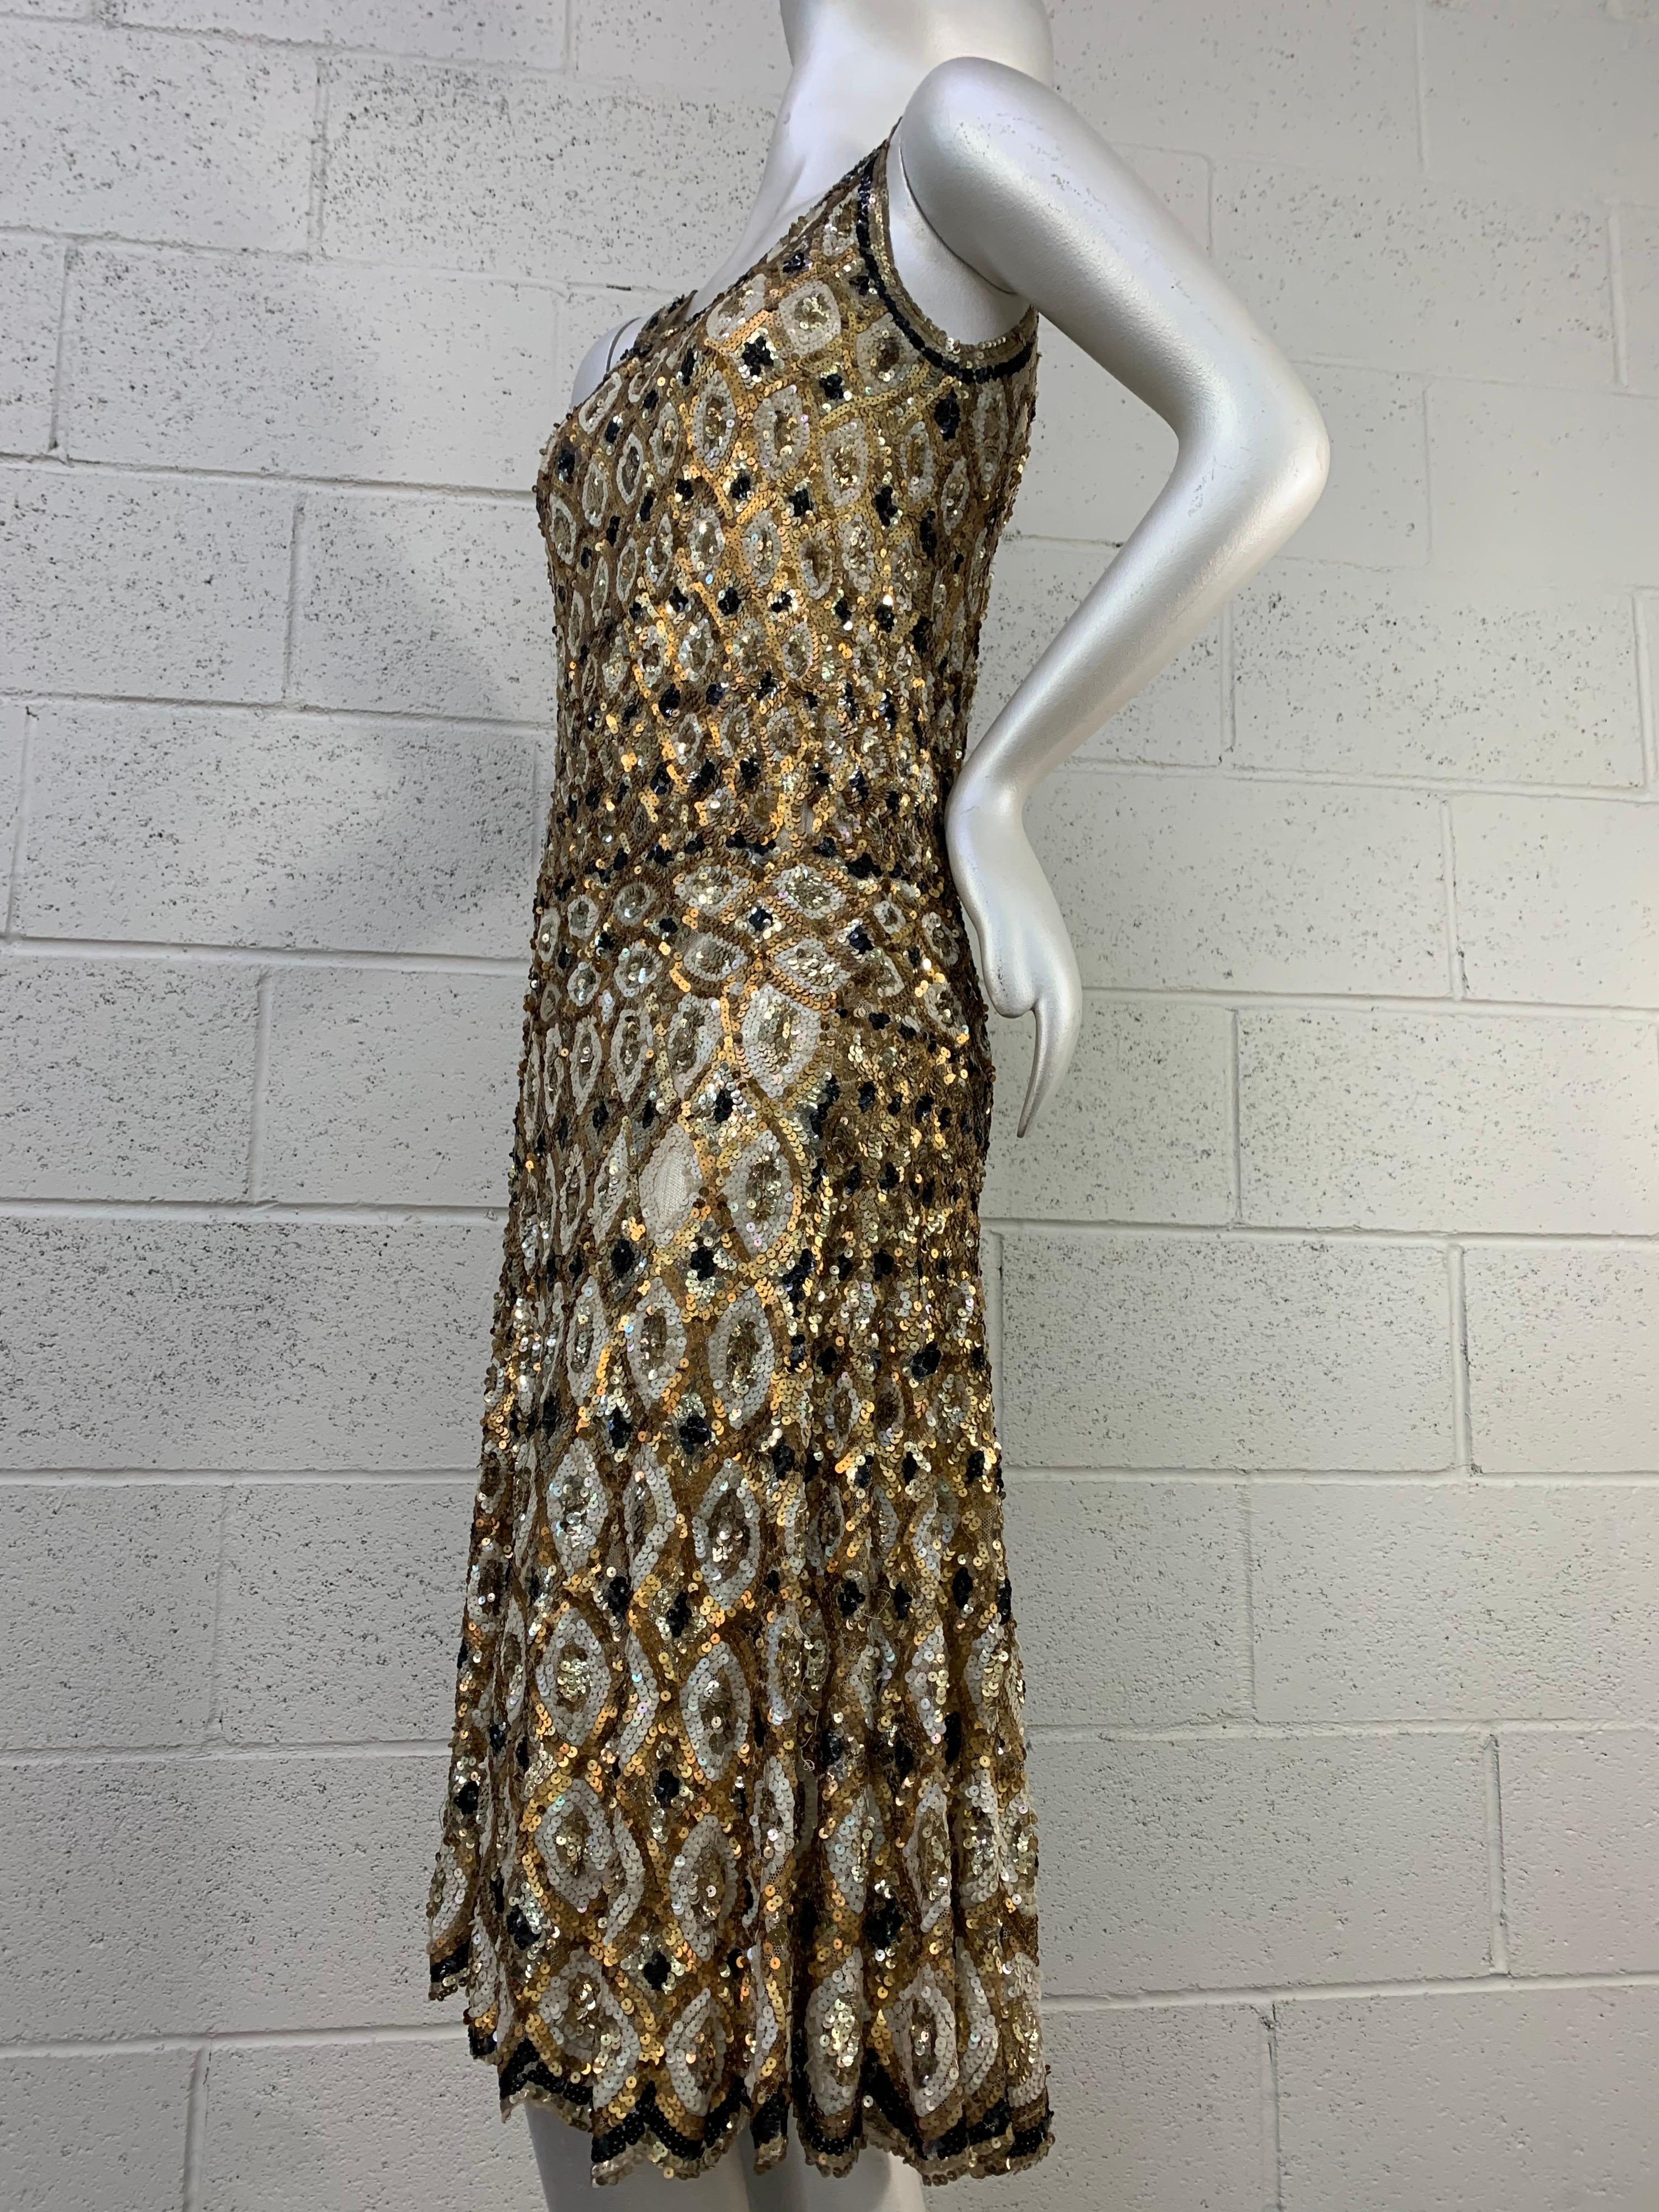 Une robe de danse à paillettes de style Art Déco des années 1920, de fabrication française, avec des motifs d'arlequin en or et noir. Jupe très ample avec taille tombante et bandeau pour une grande liberté de mouvement. Le motif en losange sur le